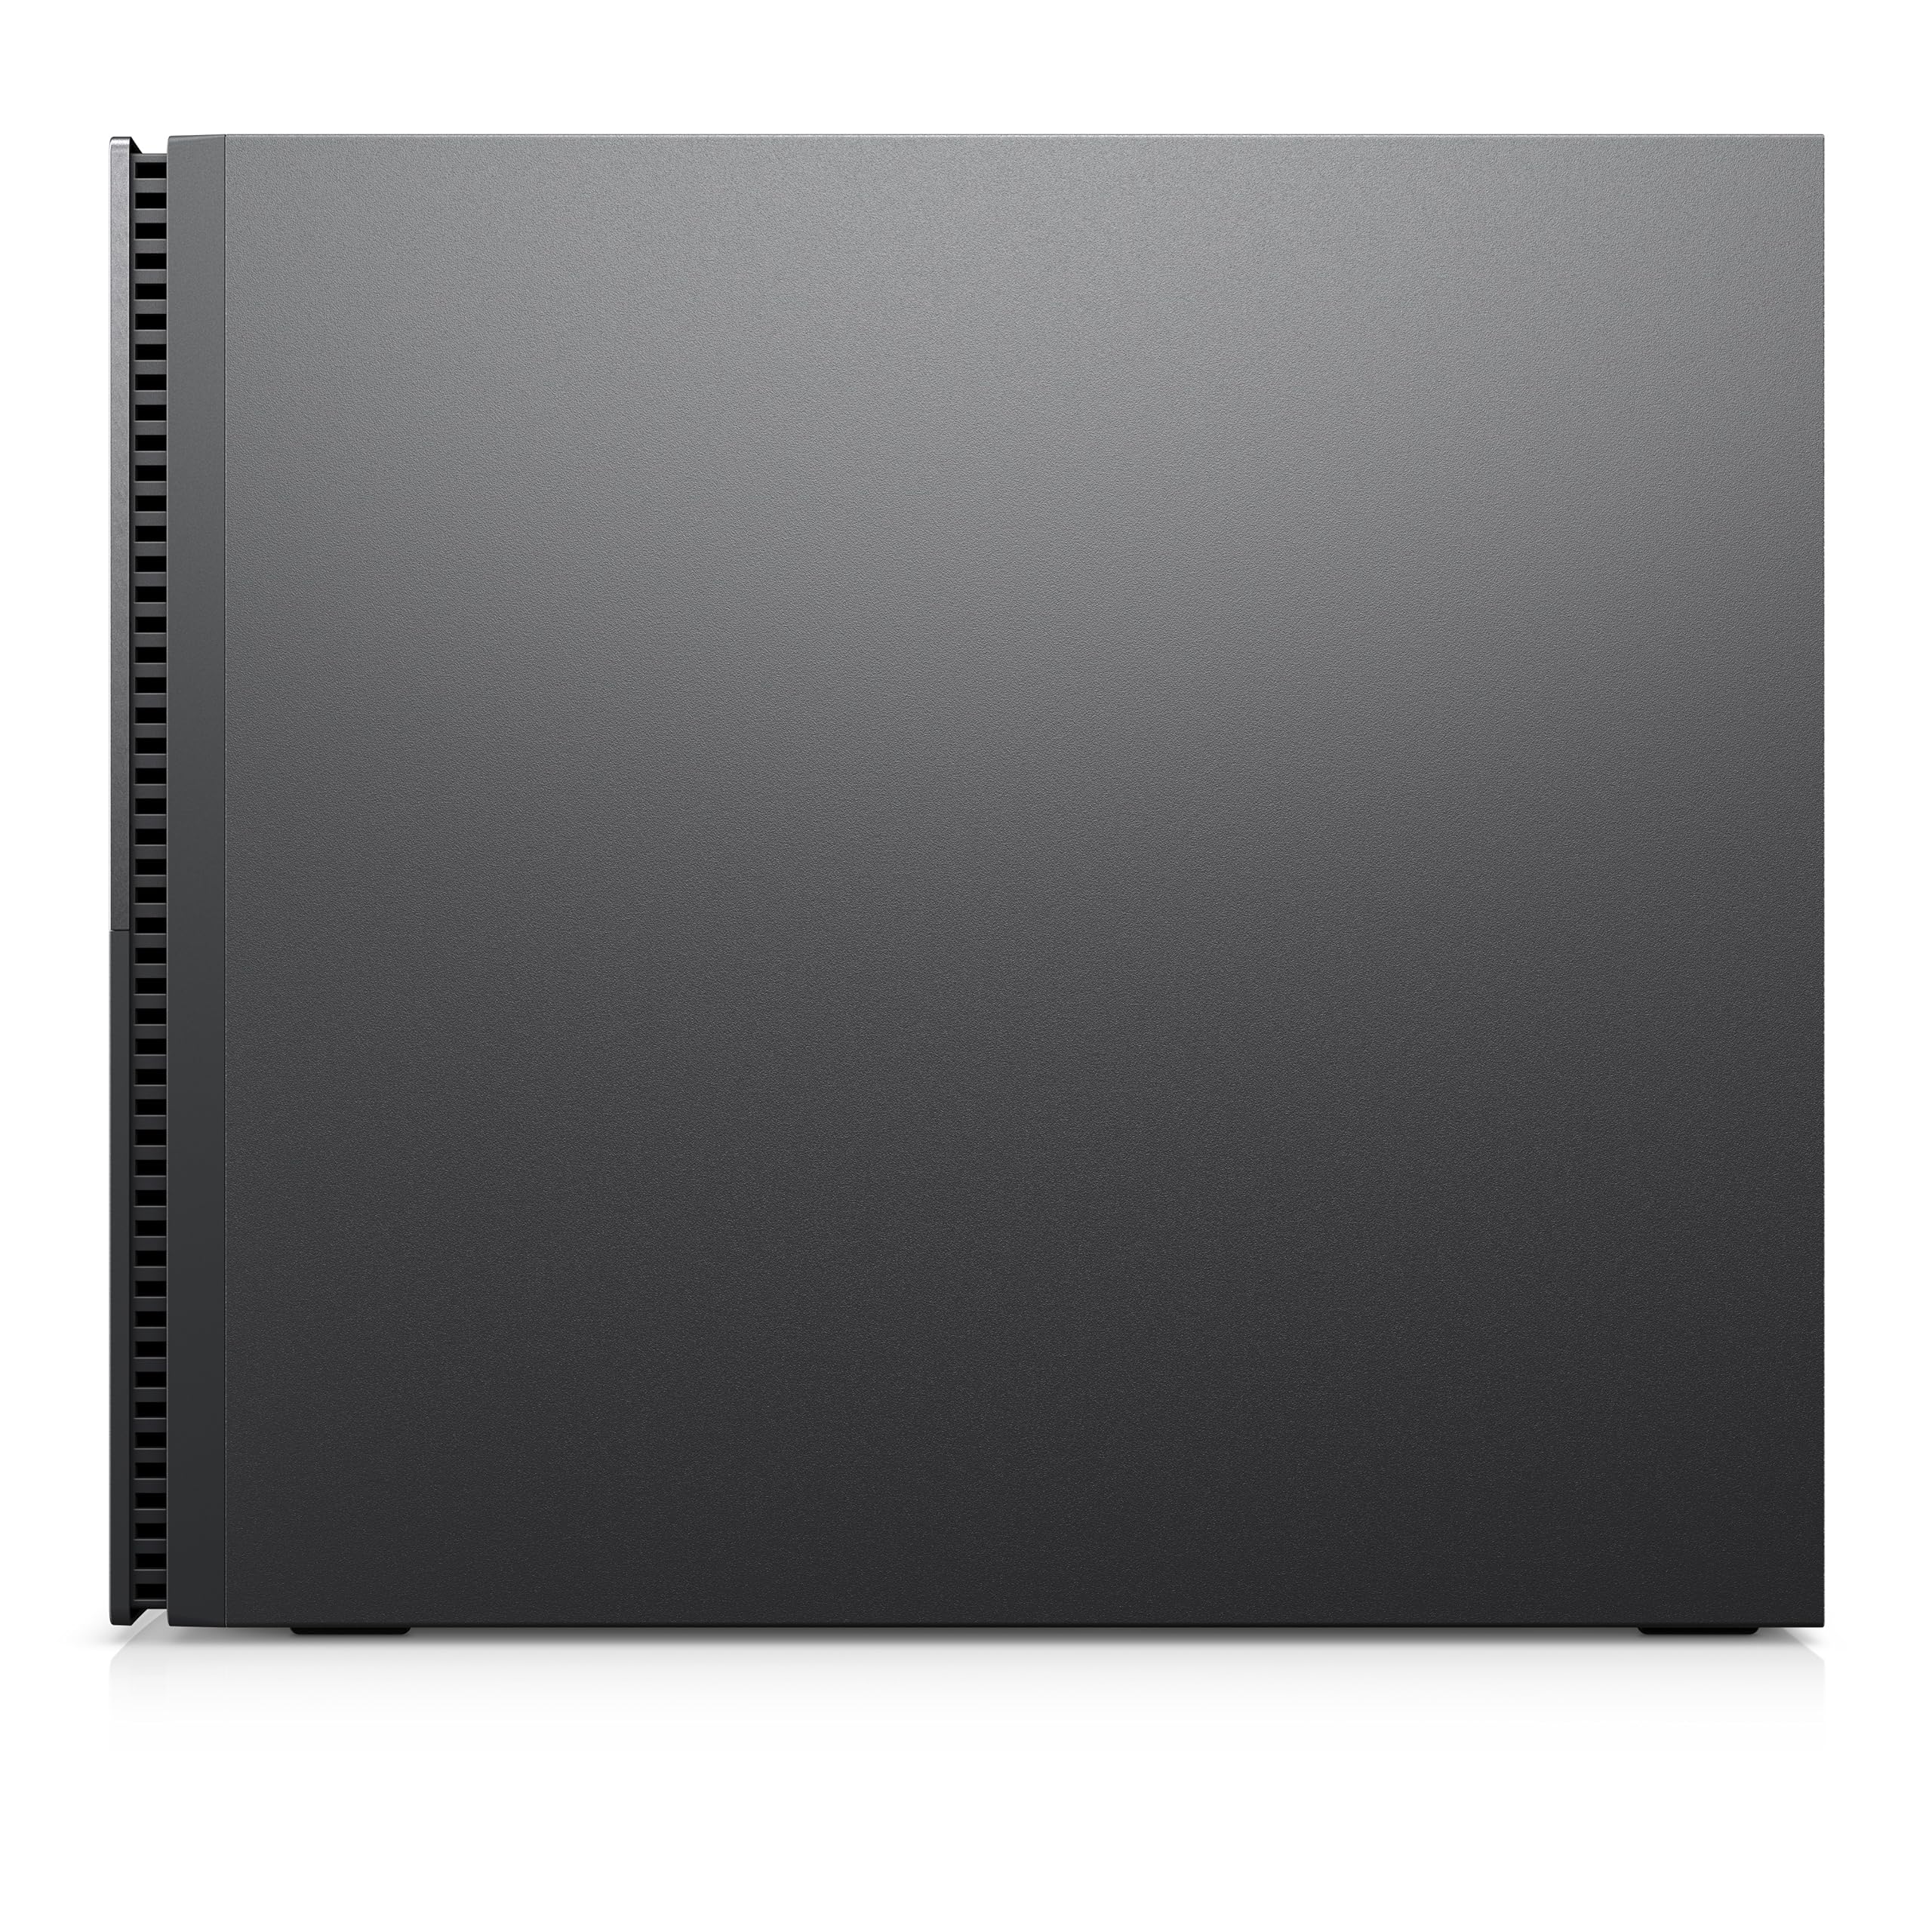 Dell XPS 8960 Desktop – i9-13900K (24 Cores, 5.8Ghz), GbE, WIFI 6E & BT 5.2, 1 Year Warranty, Windows 11 Pro (Renewed)